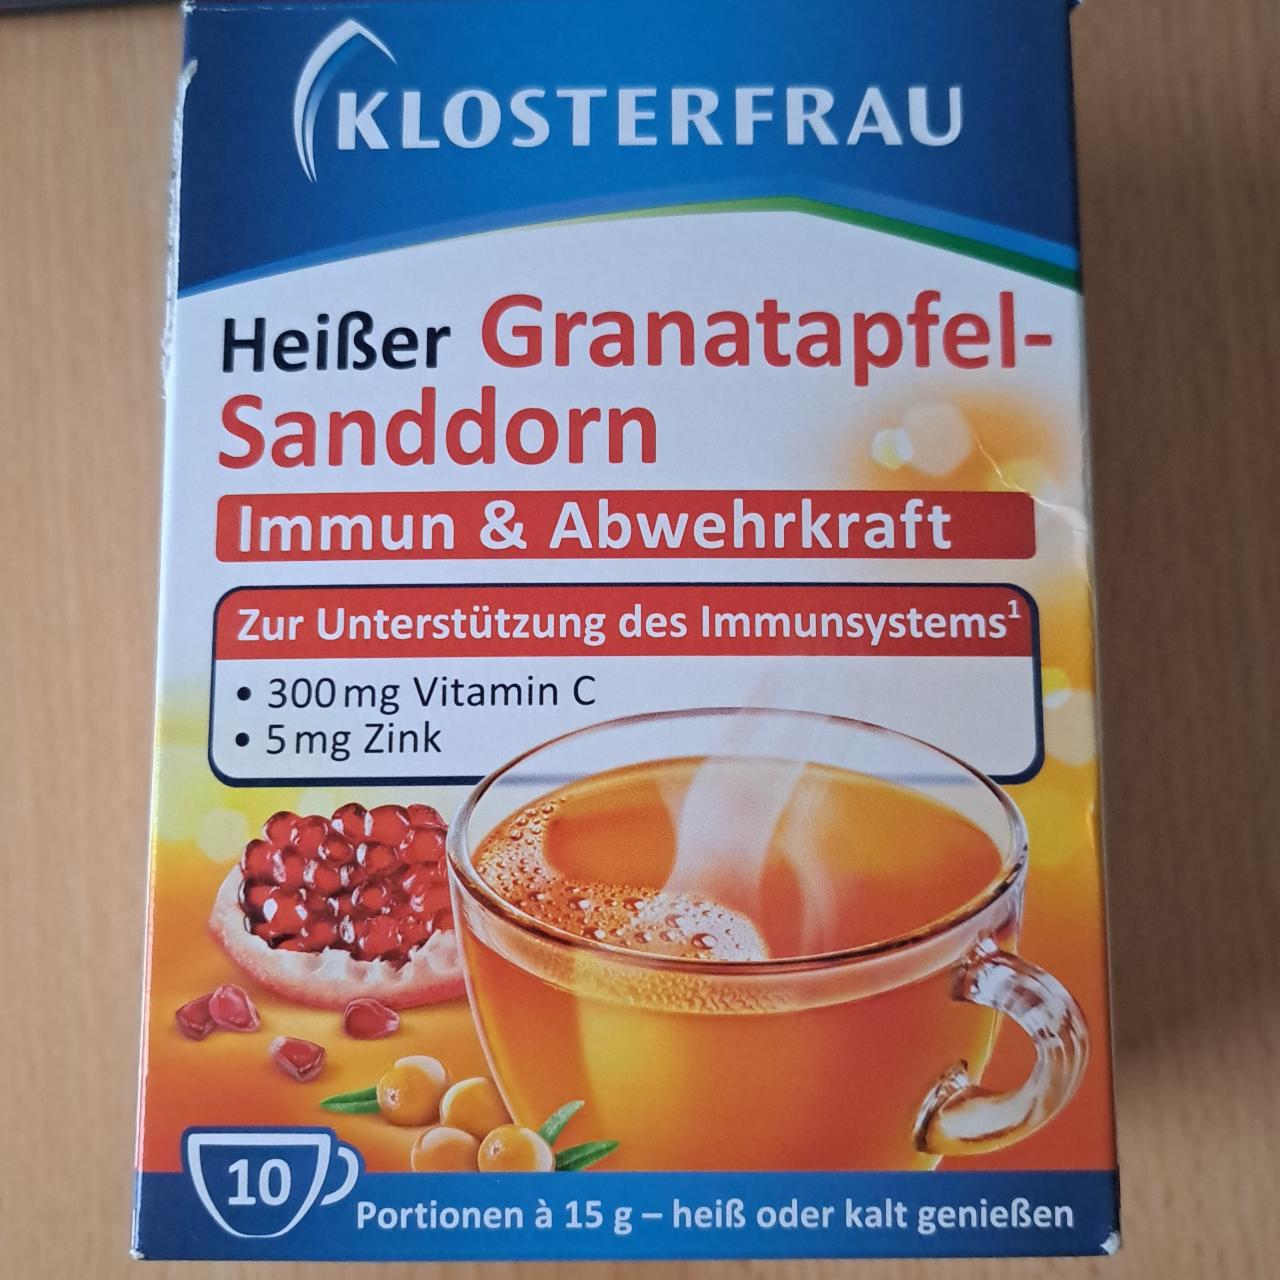 Fotografie - Heißer Granatapfel-Sanddorn Klosterfrau